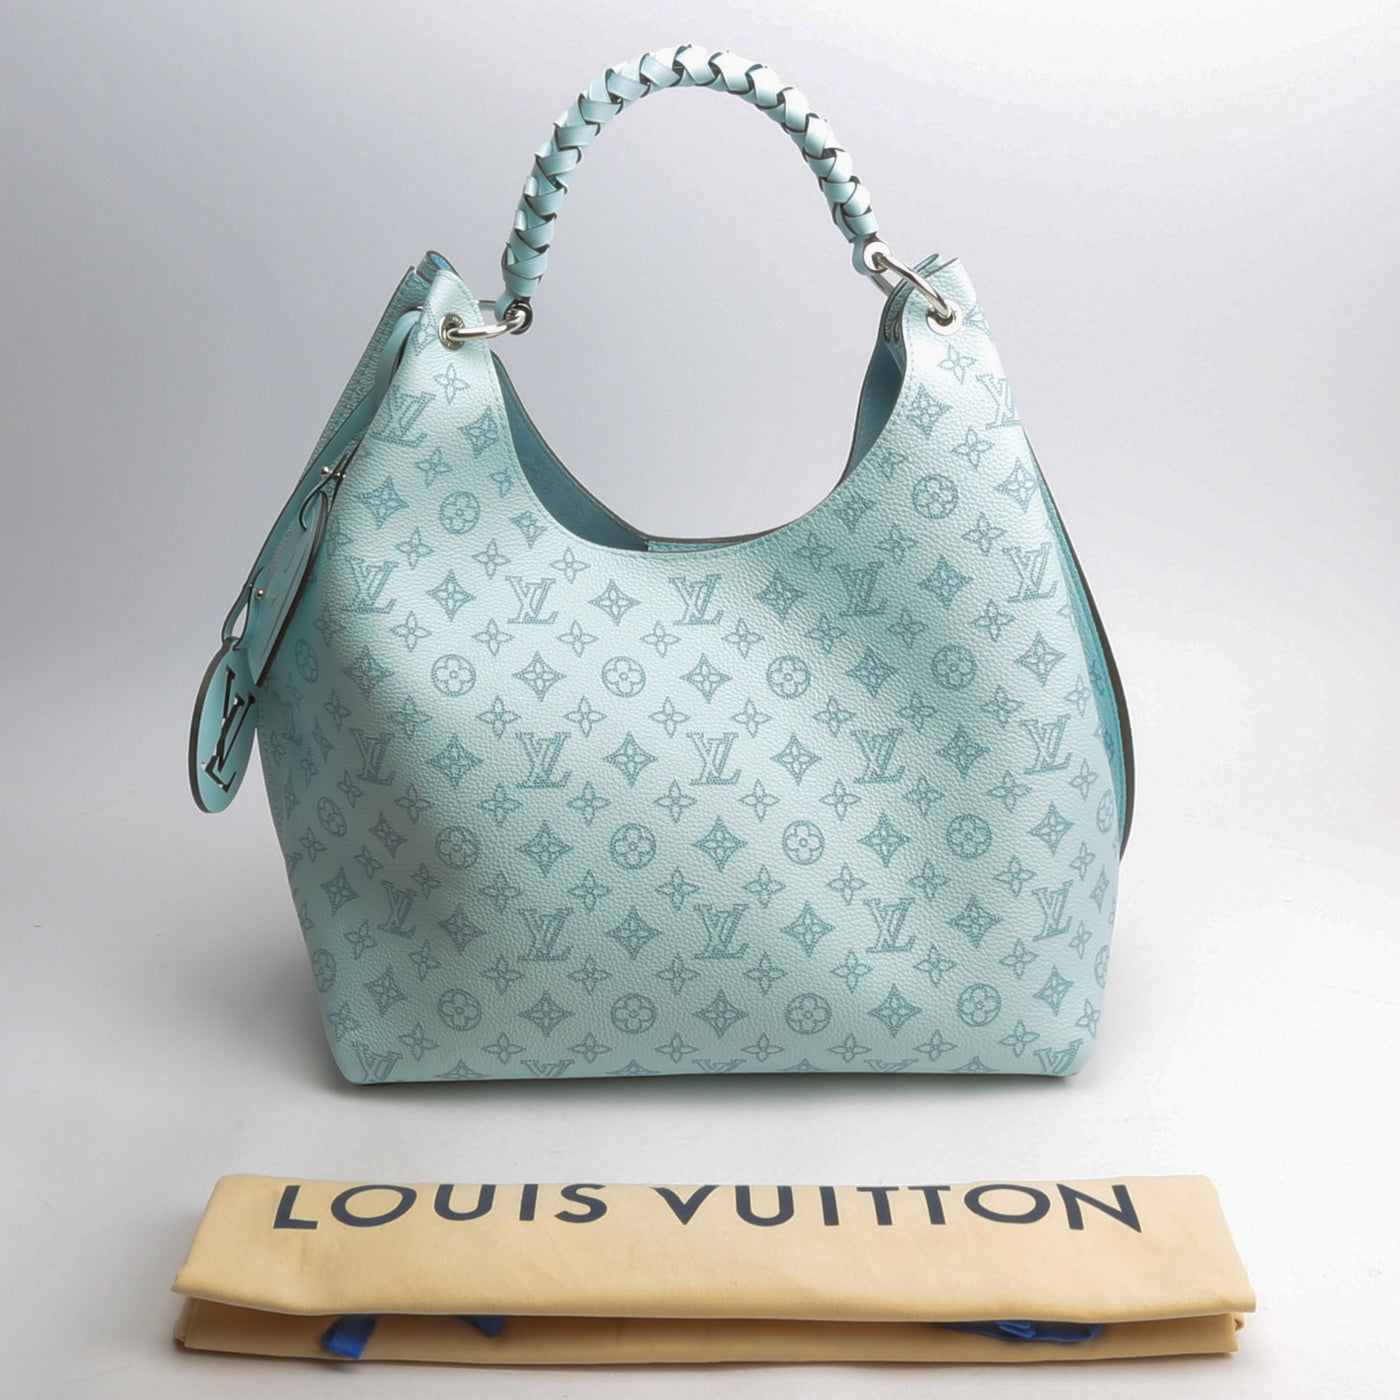 Louis Vuitton's Carmel Hobo authentic